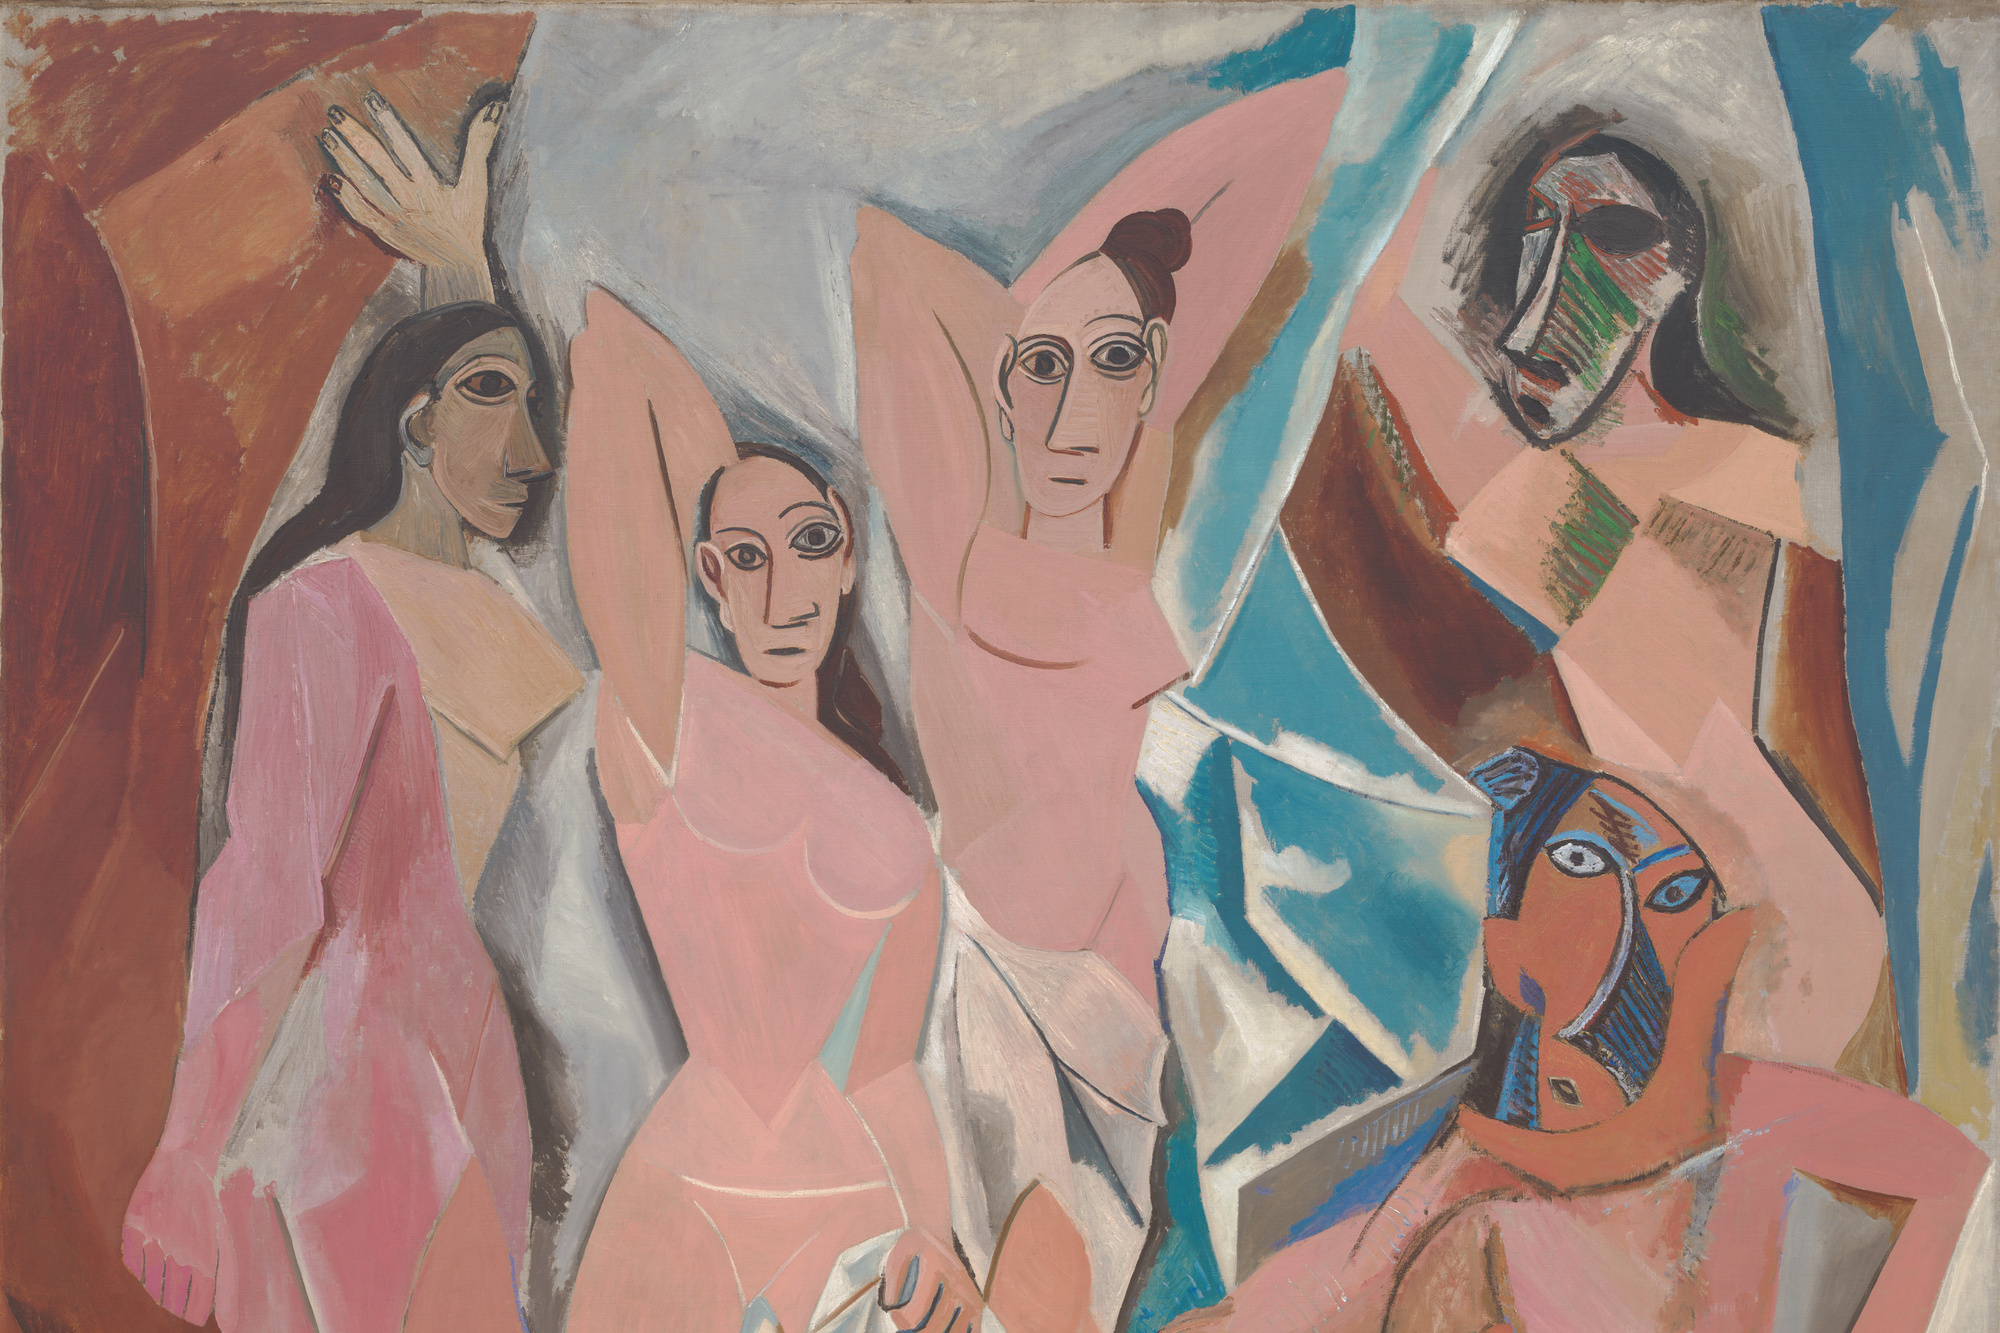  Picasso’s Les Demoiselles d’Avignon 